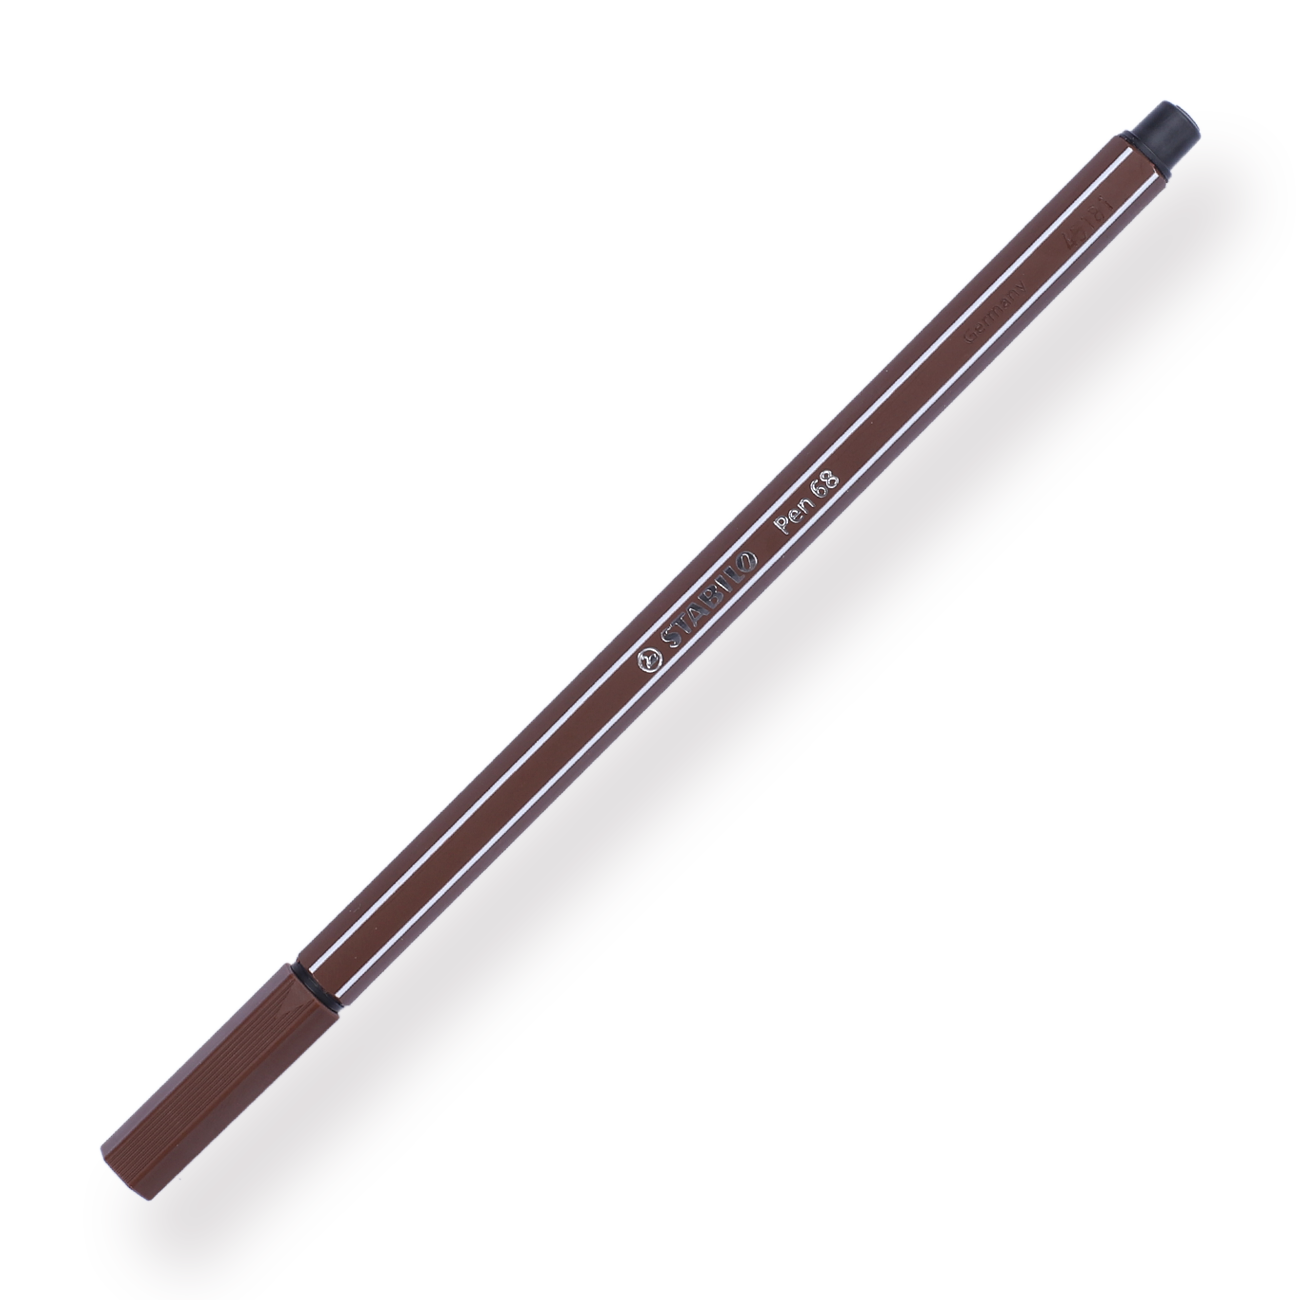  Stabilo Pen 68 Marker - 1.0 mm - Black